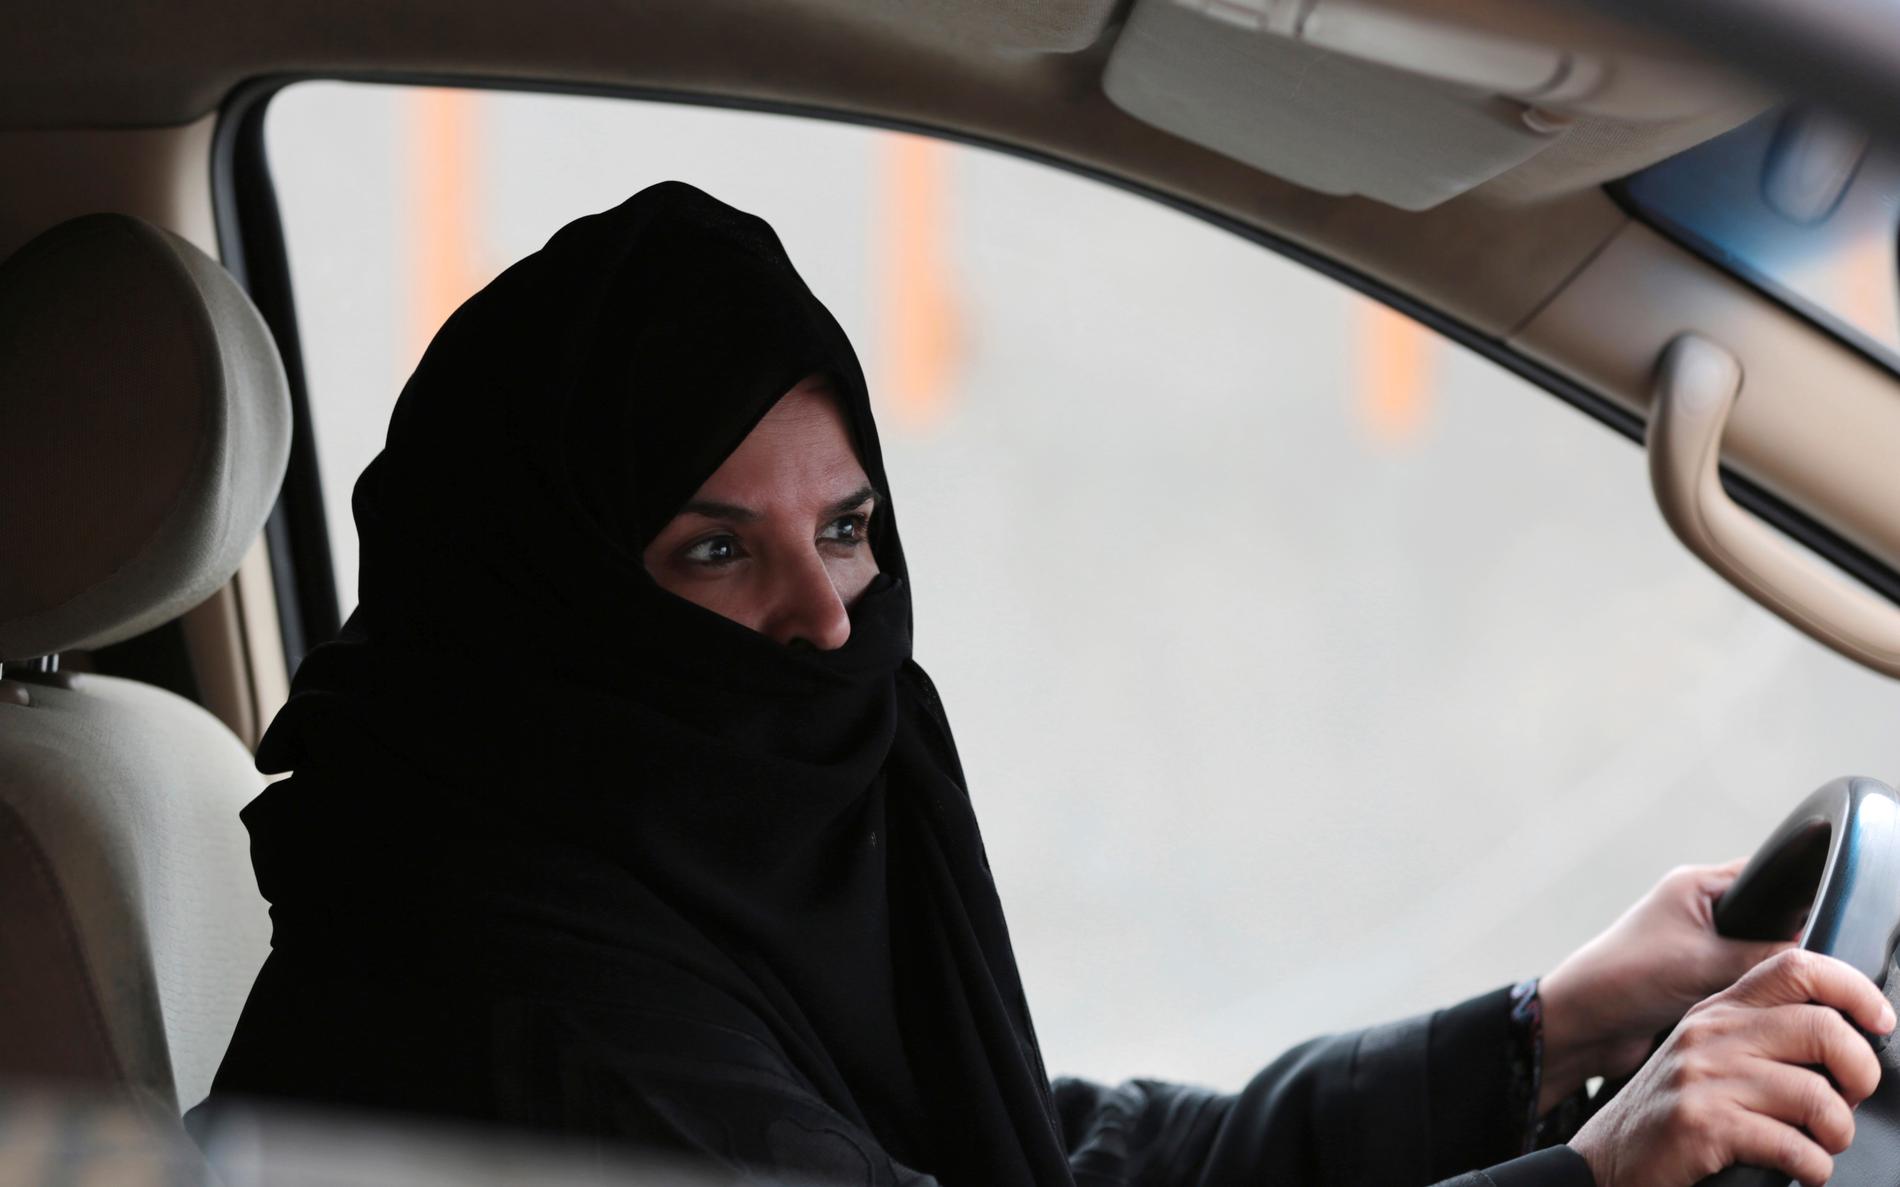 Många av de kvinnliga aktivister som i fjol greps i Saudiarabien kämpade för att kvinnlig bilkörning skulle bli lagligt i det ärkekonservativa kungadömet.